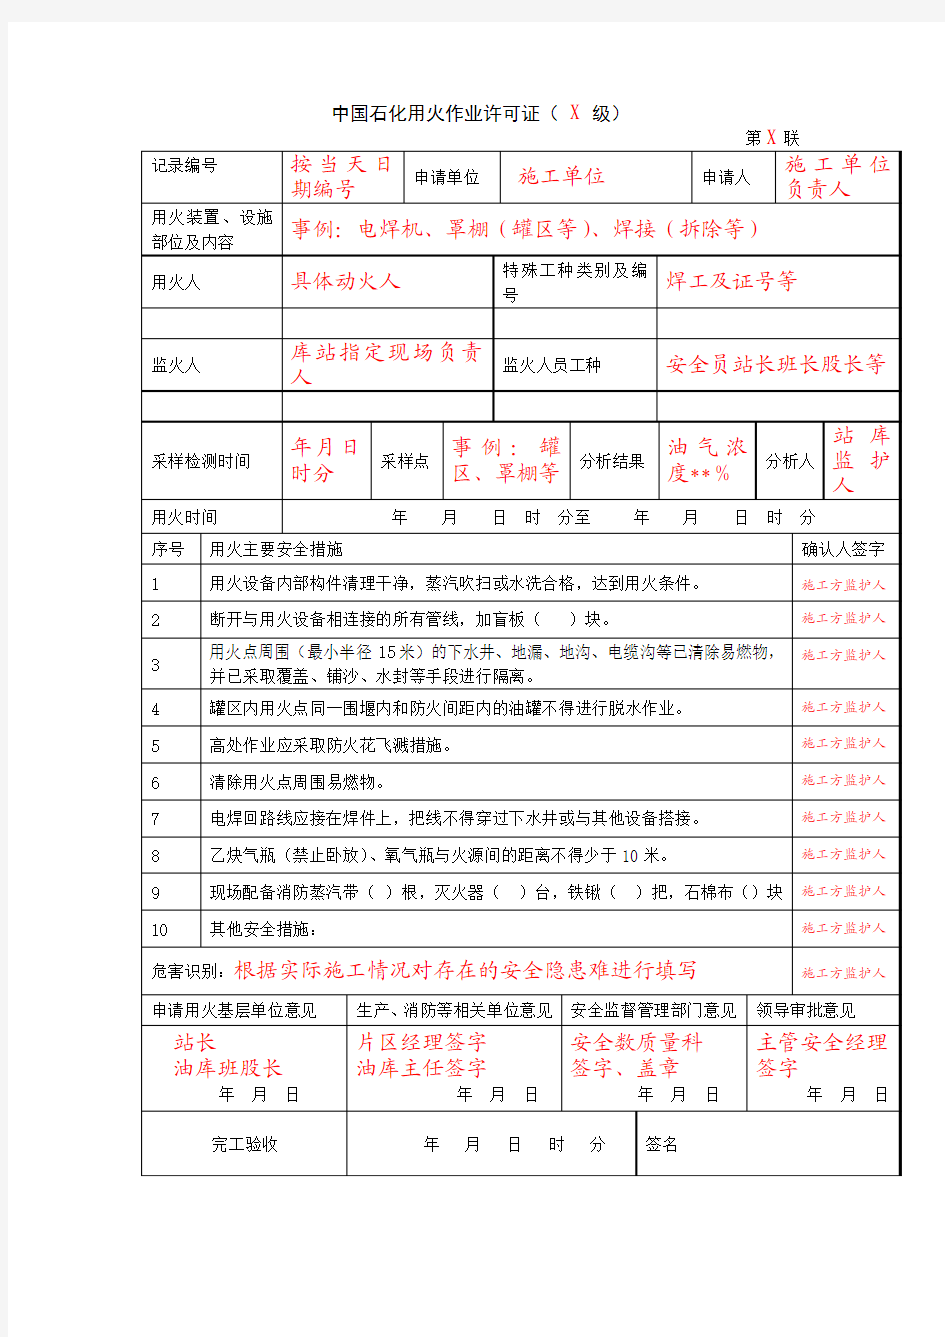 中国石化用火作业许可证(模板)